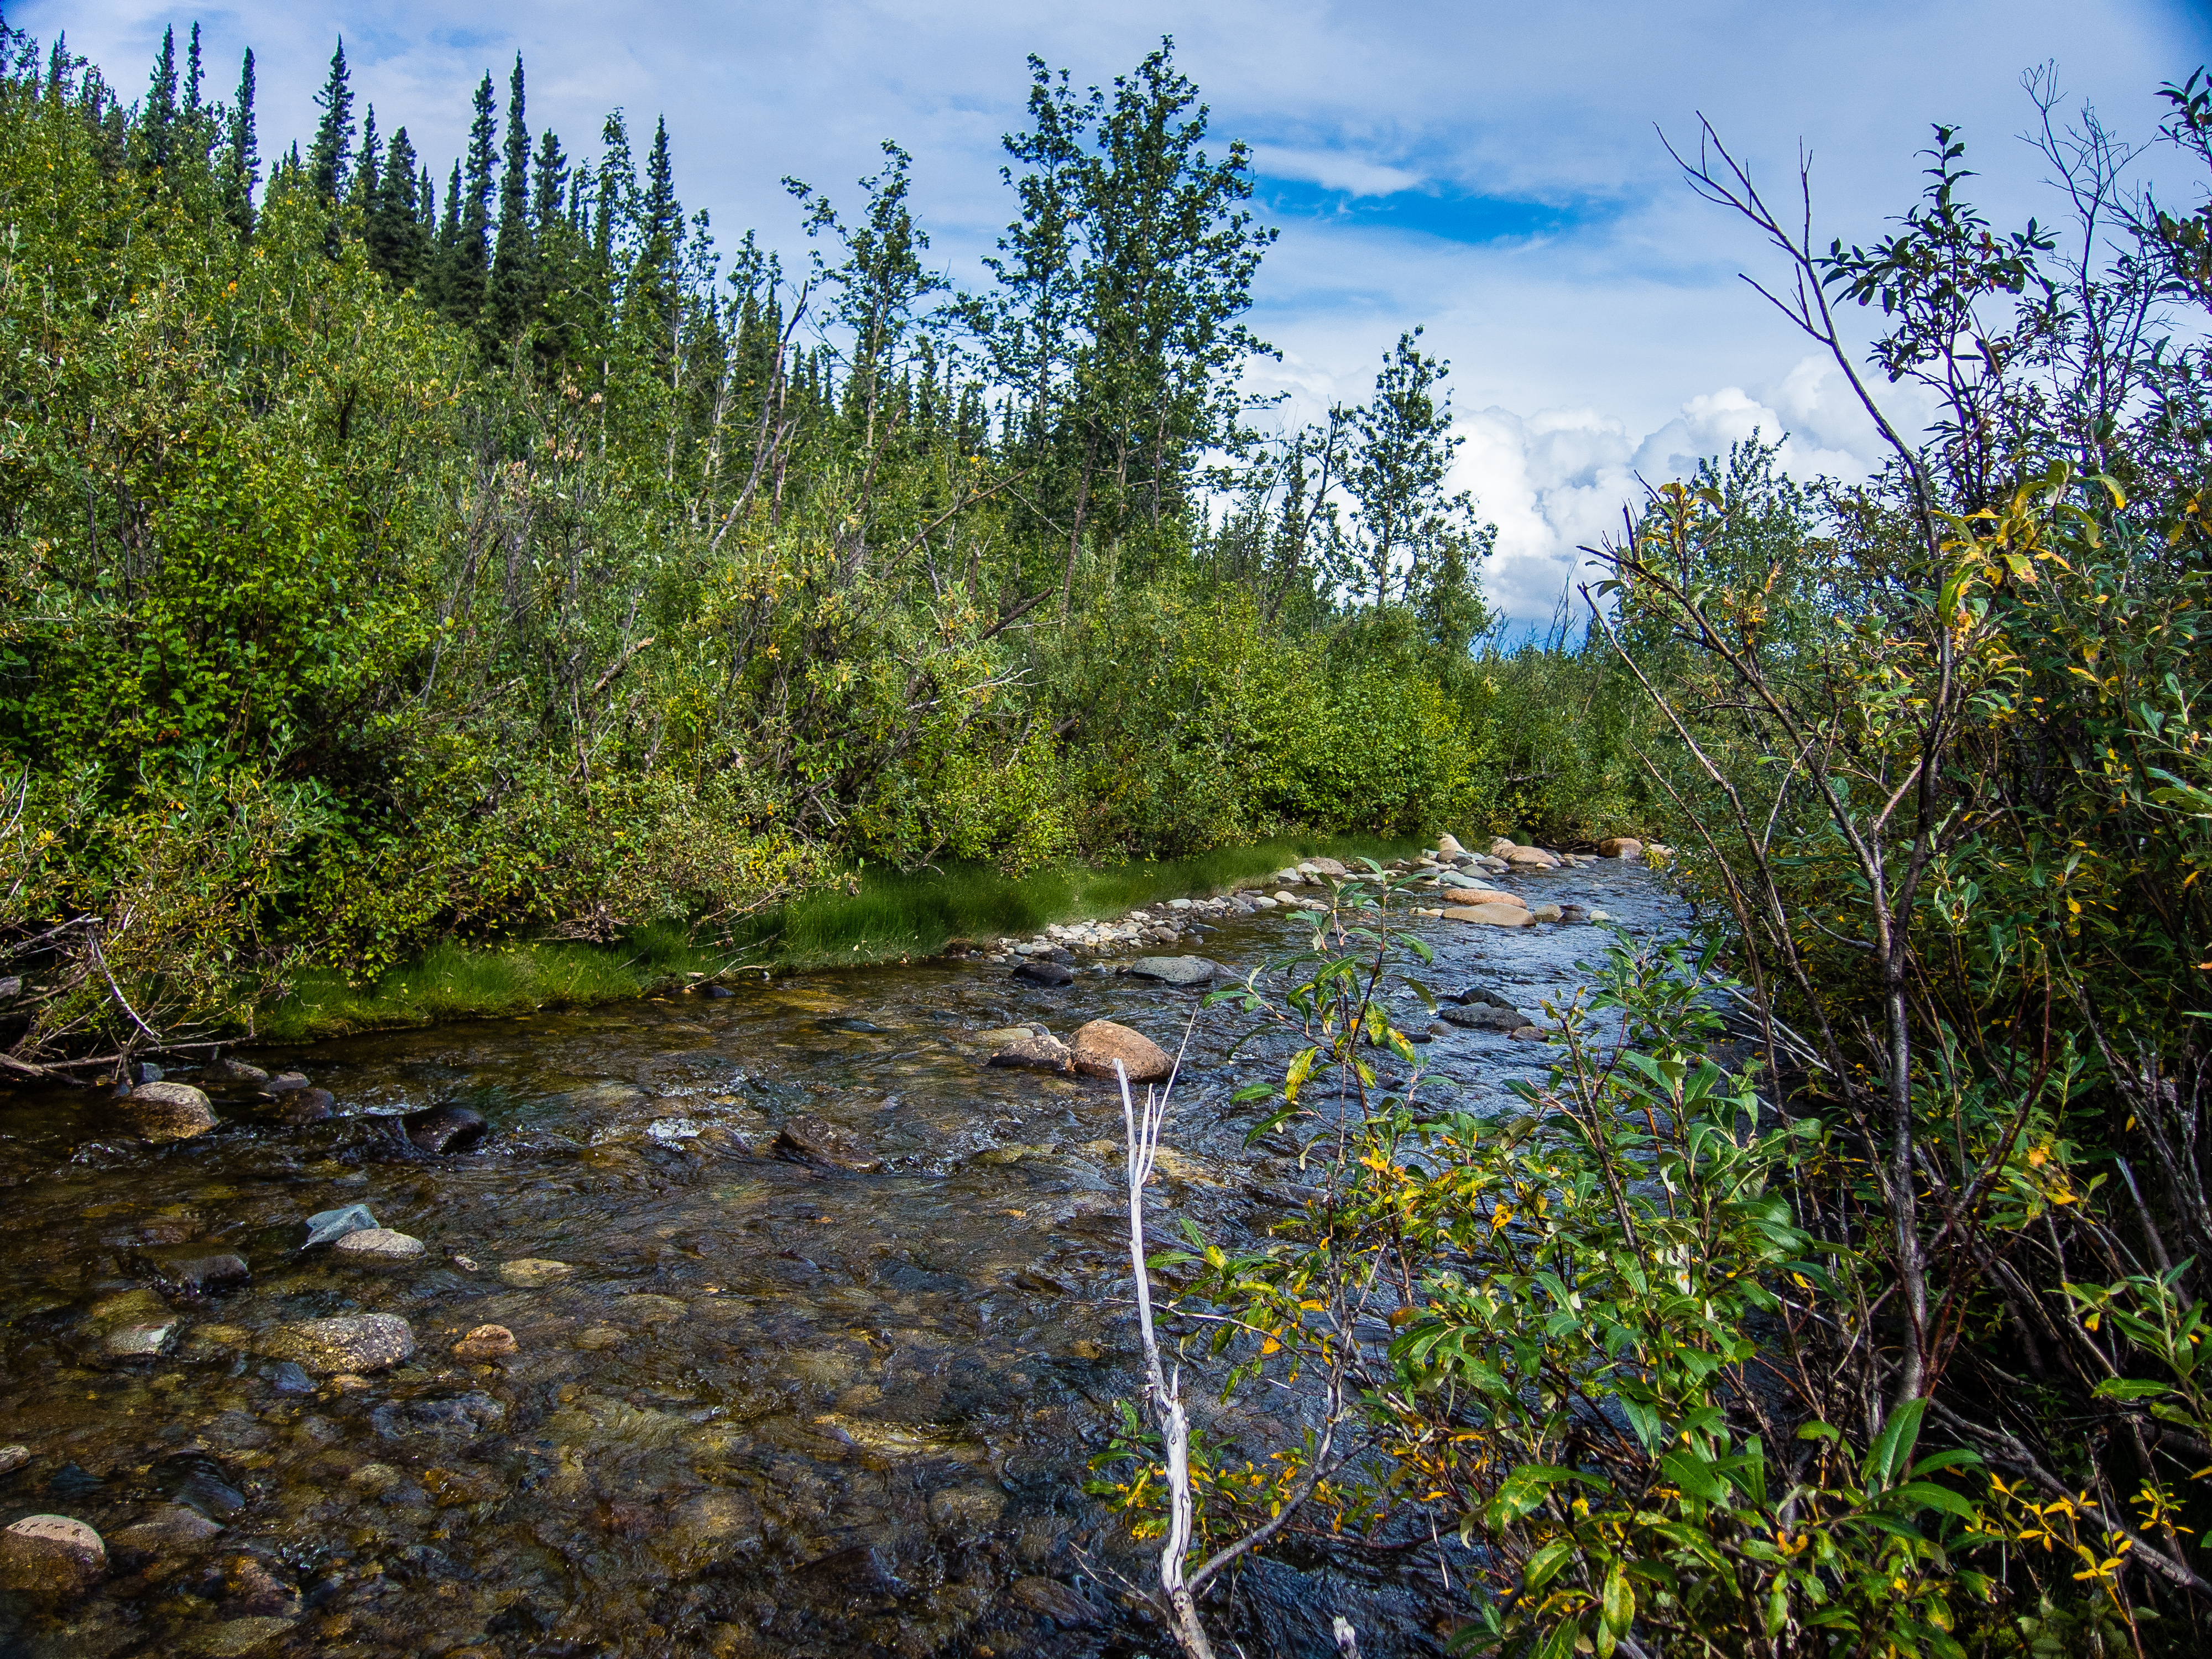  From Mystery Creek # 170 in Alaska.